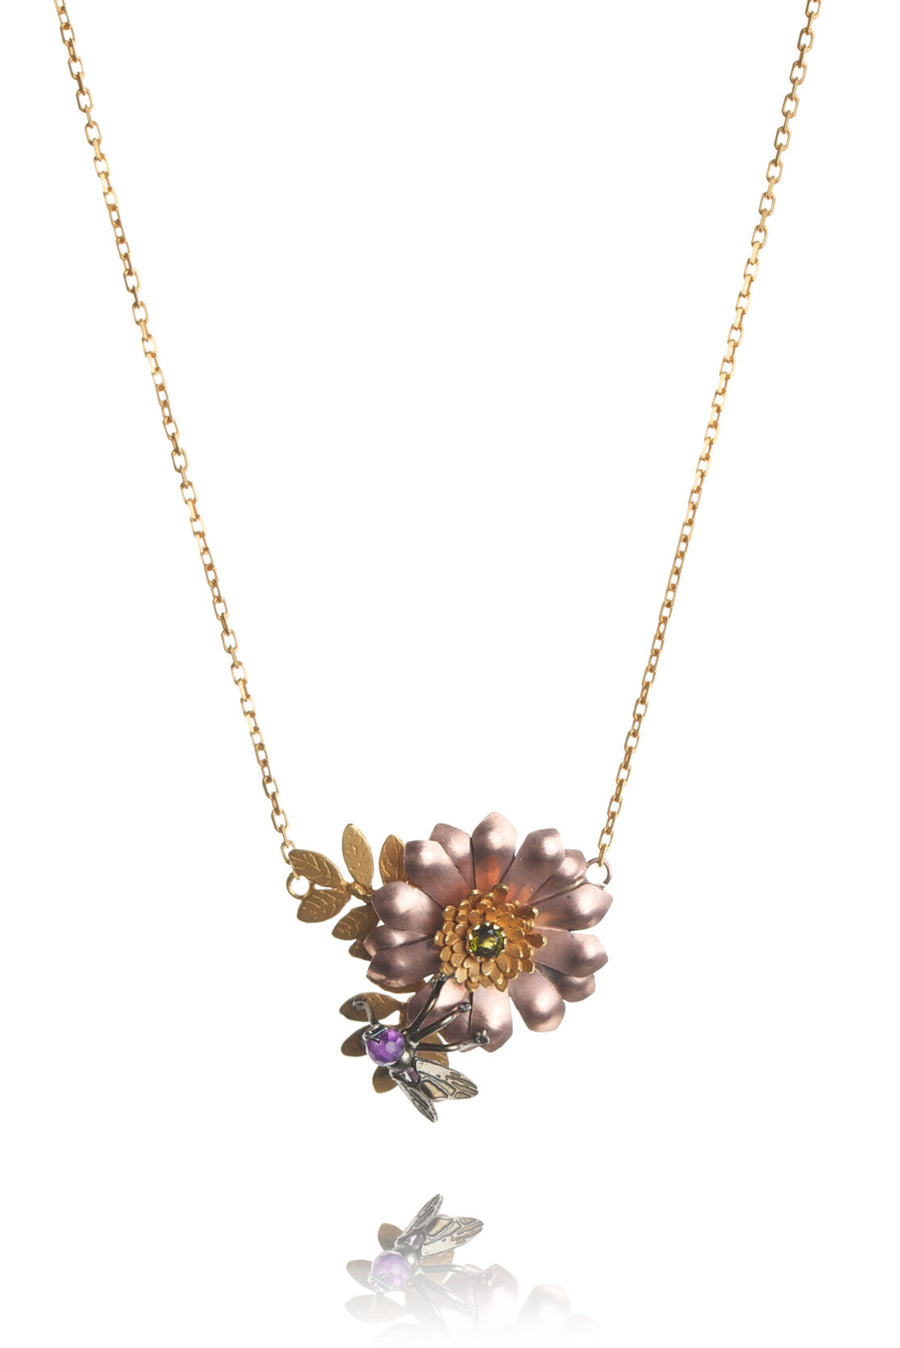 Dutch Bouquet Necklace by Amanda Coleman